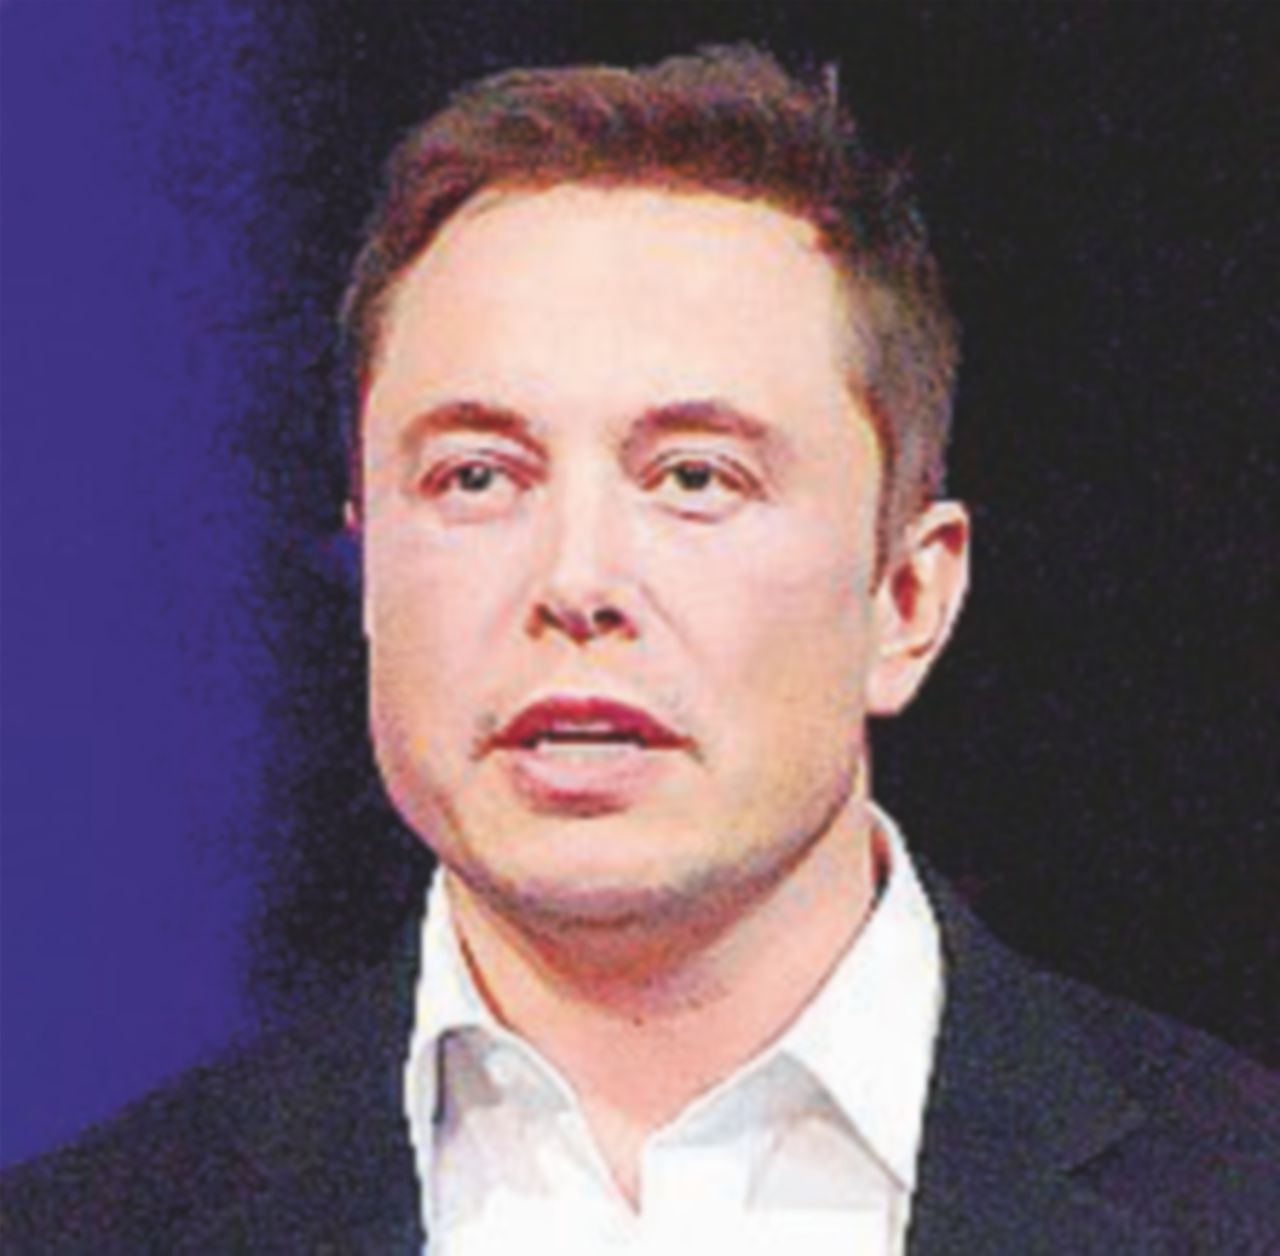 Copertina di Museruola della Sec al divino Elon Musk